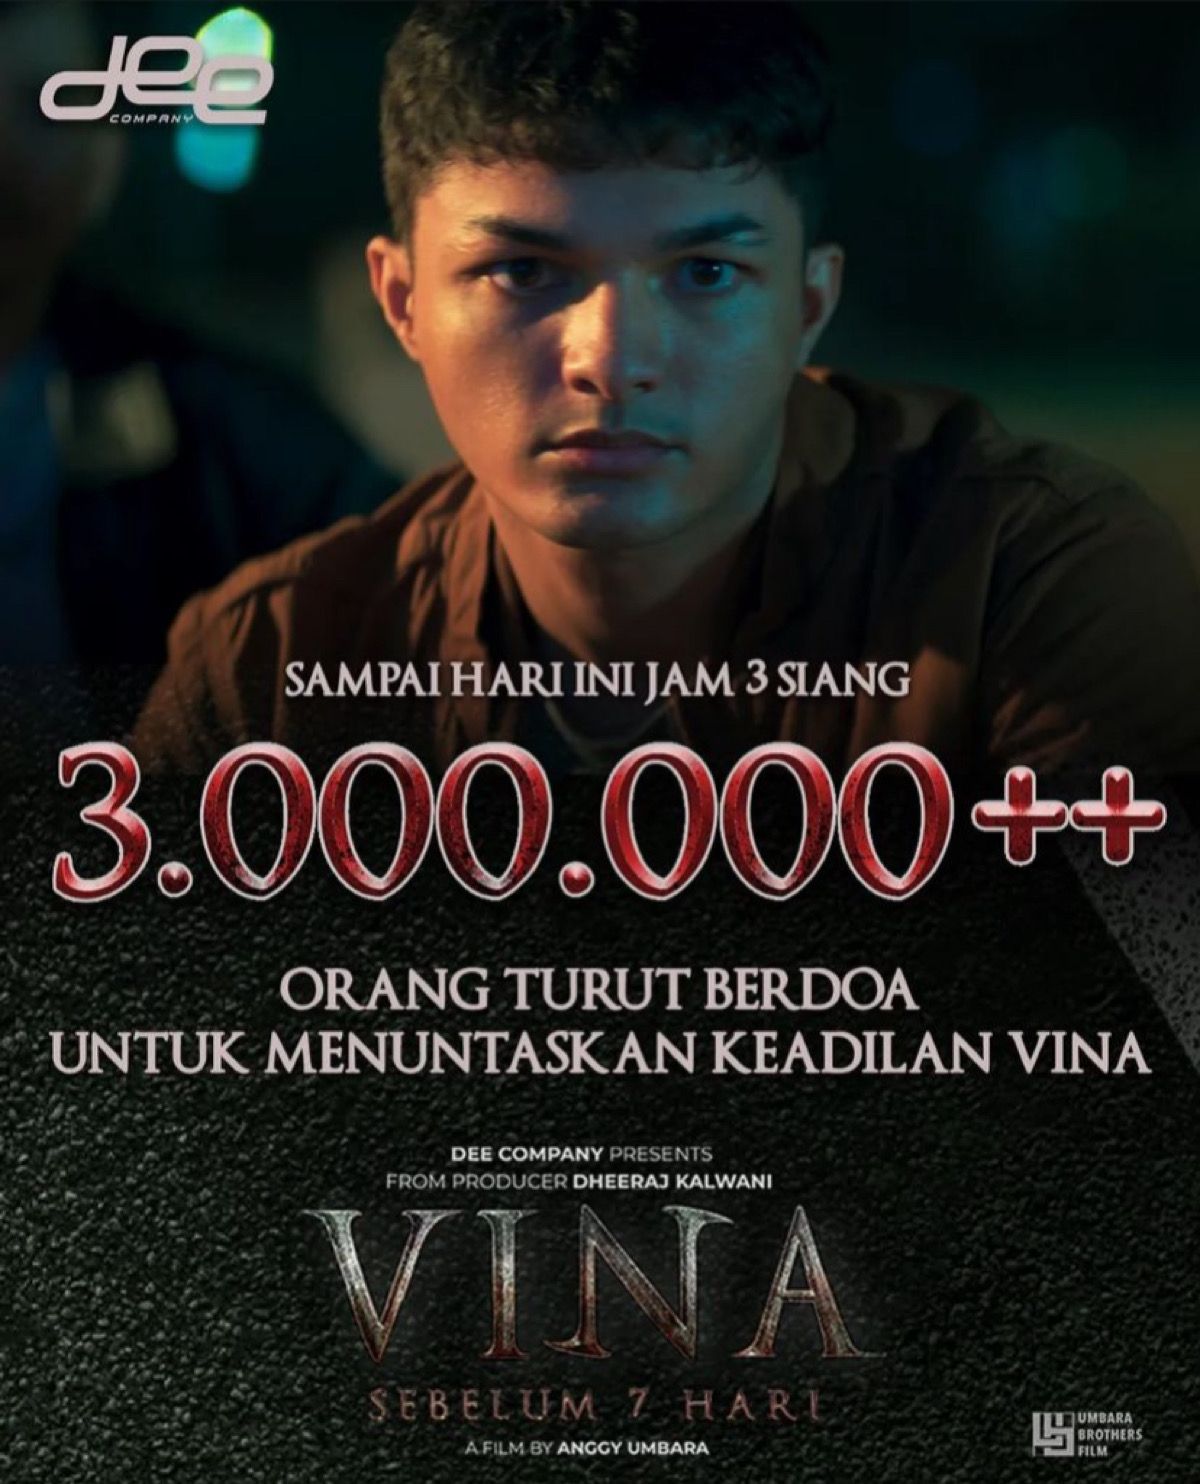 Seminggu tayang di bioskop film Vina Sebelum 7 Hari sudah ditonton lebih dari 3 juta orang